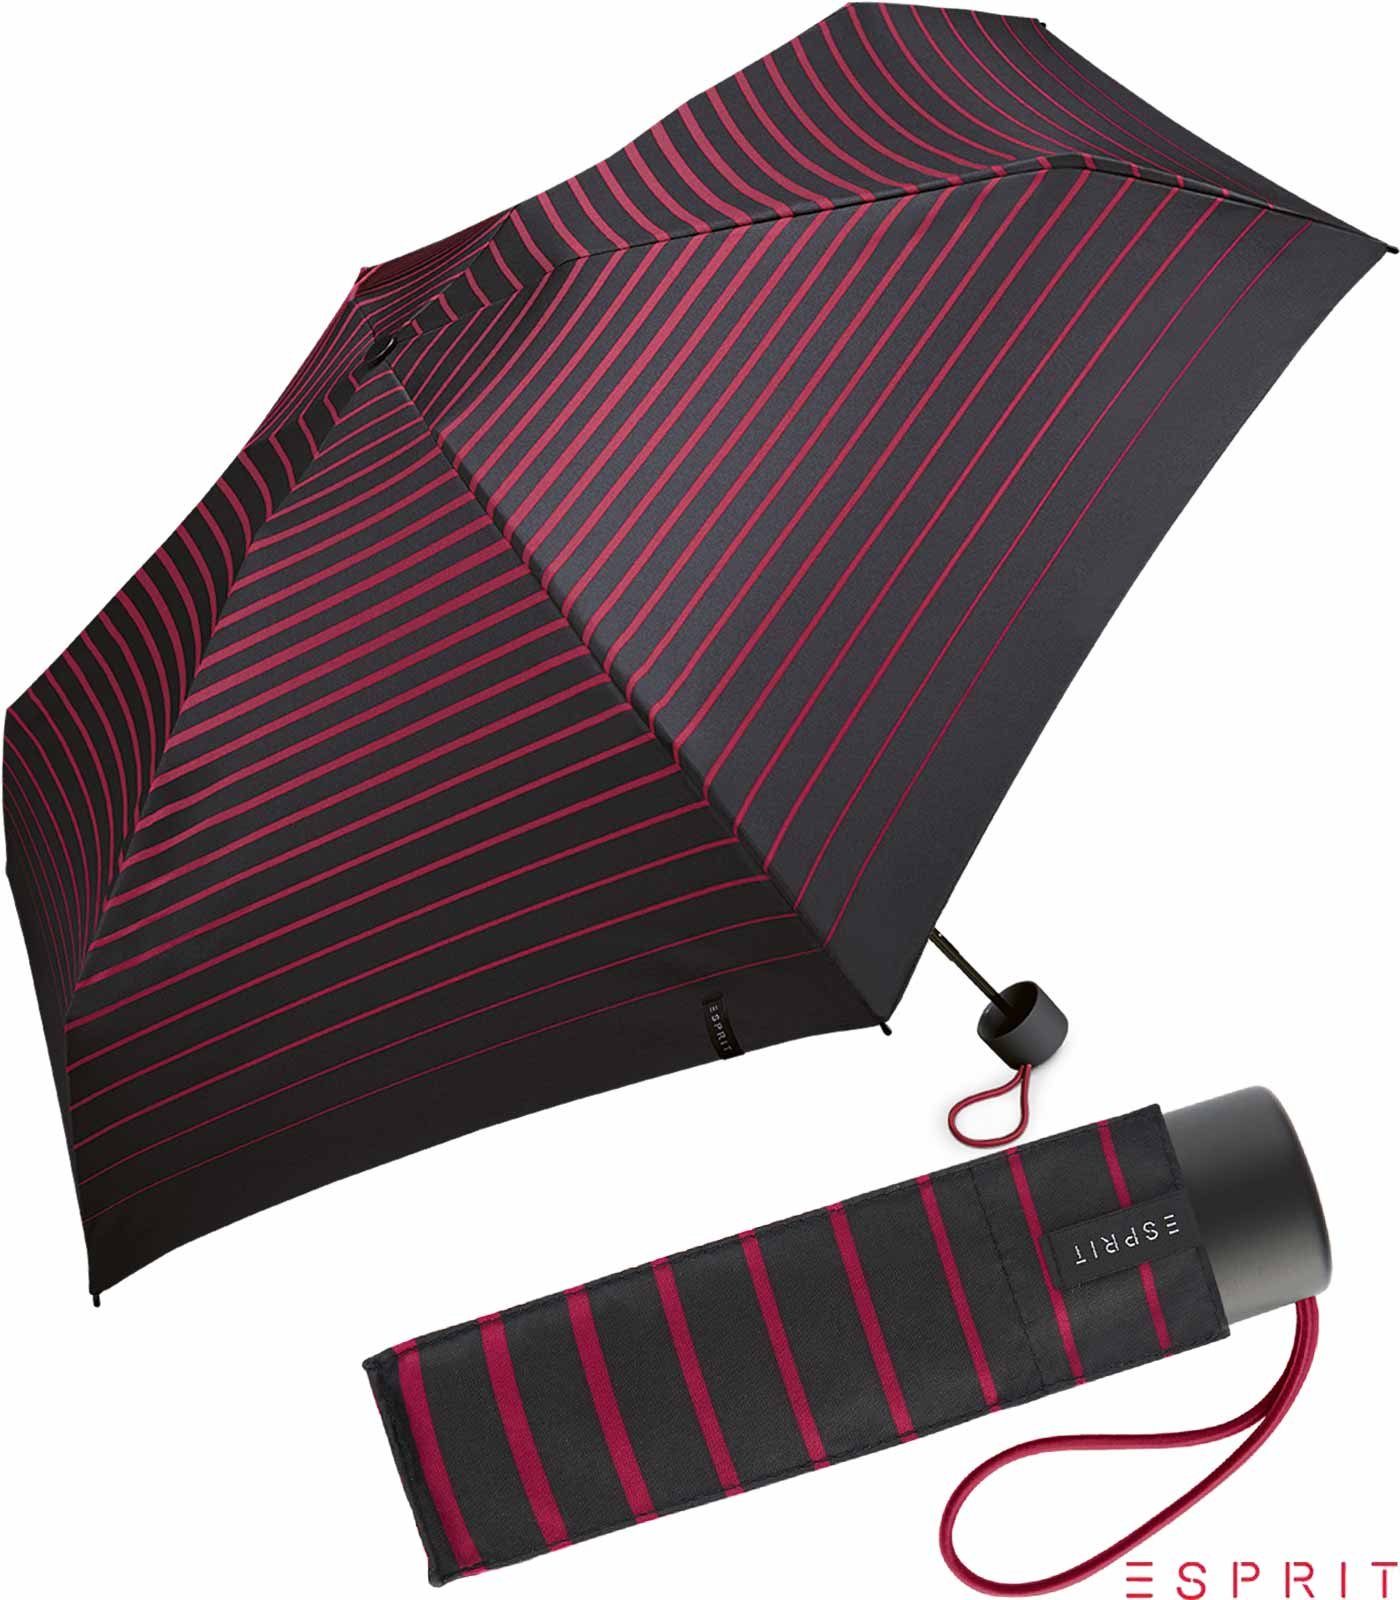 Esprit Taschenregenschirm Damen Super Mini Petito - Degradee Stripe - vivacious pink, winzig klein, in moderner Streifen-Optik schwarz-pink